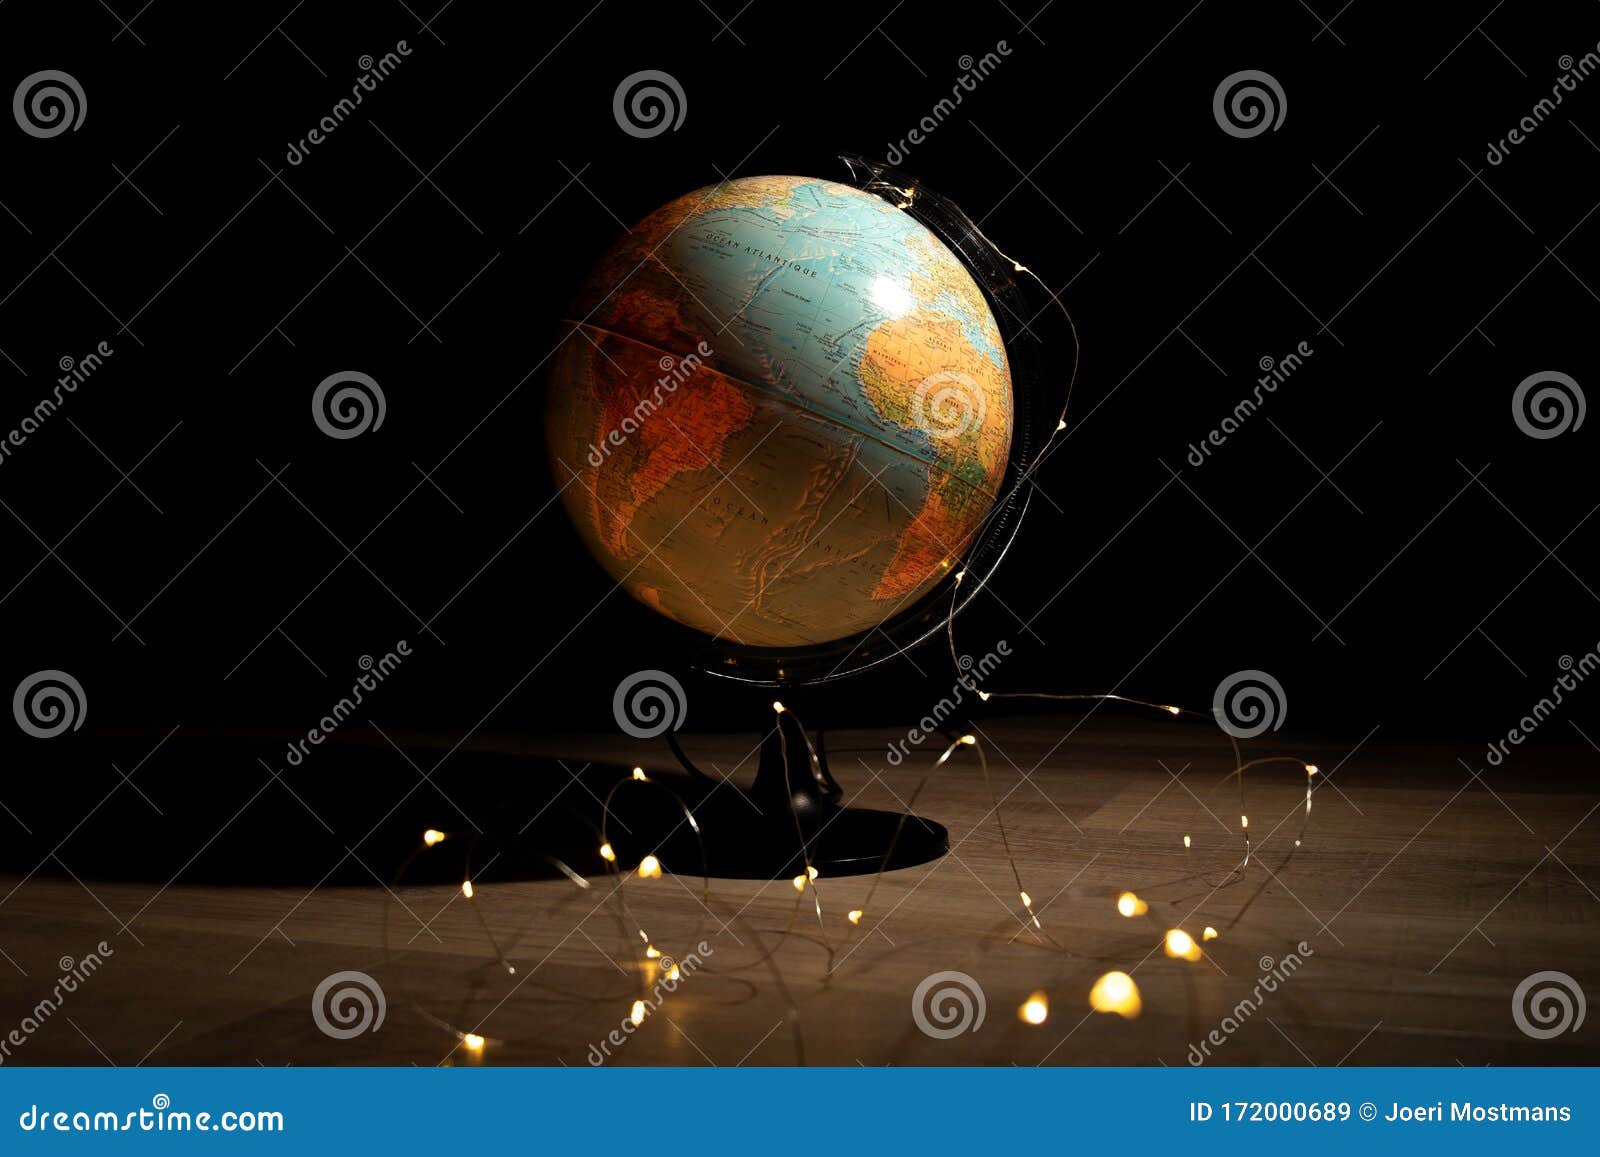 一幅地球仪的画像 在黑暗的房间里 一块木地板上的灯光环绕着它描绘了地球 是探索的完美库存图片 图片包括有它描绘了地球 是探索的完美 一幅地球仪的画像 在黑暗的房间里 一块木地板上的灯光环绕着